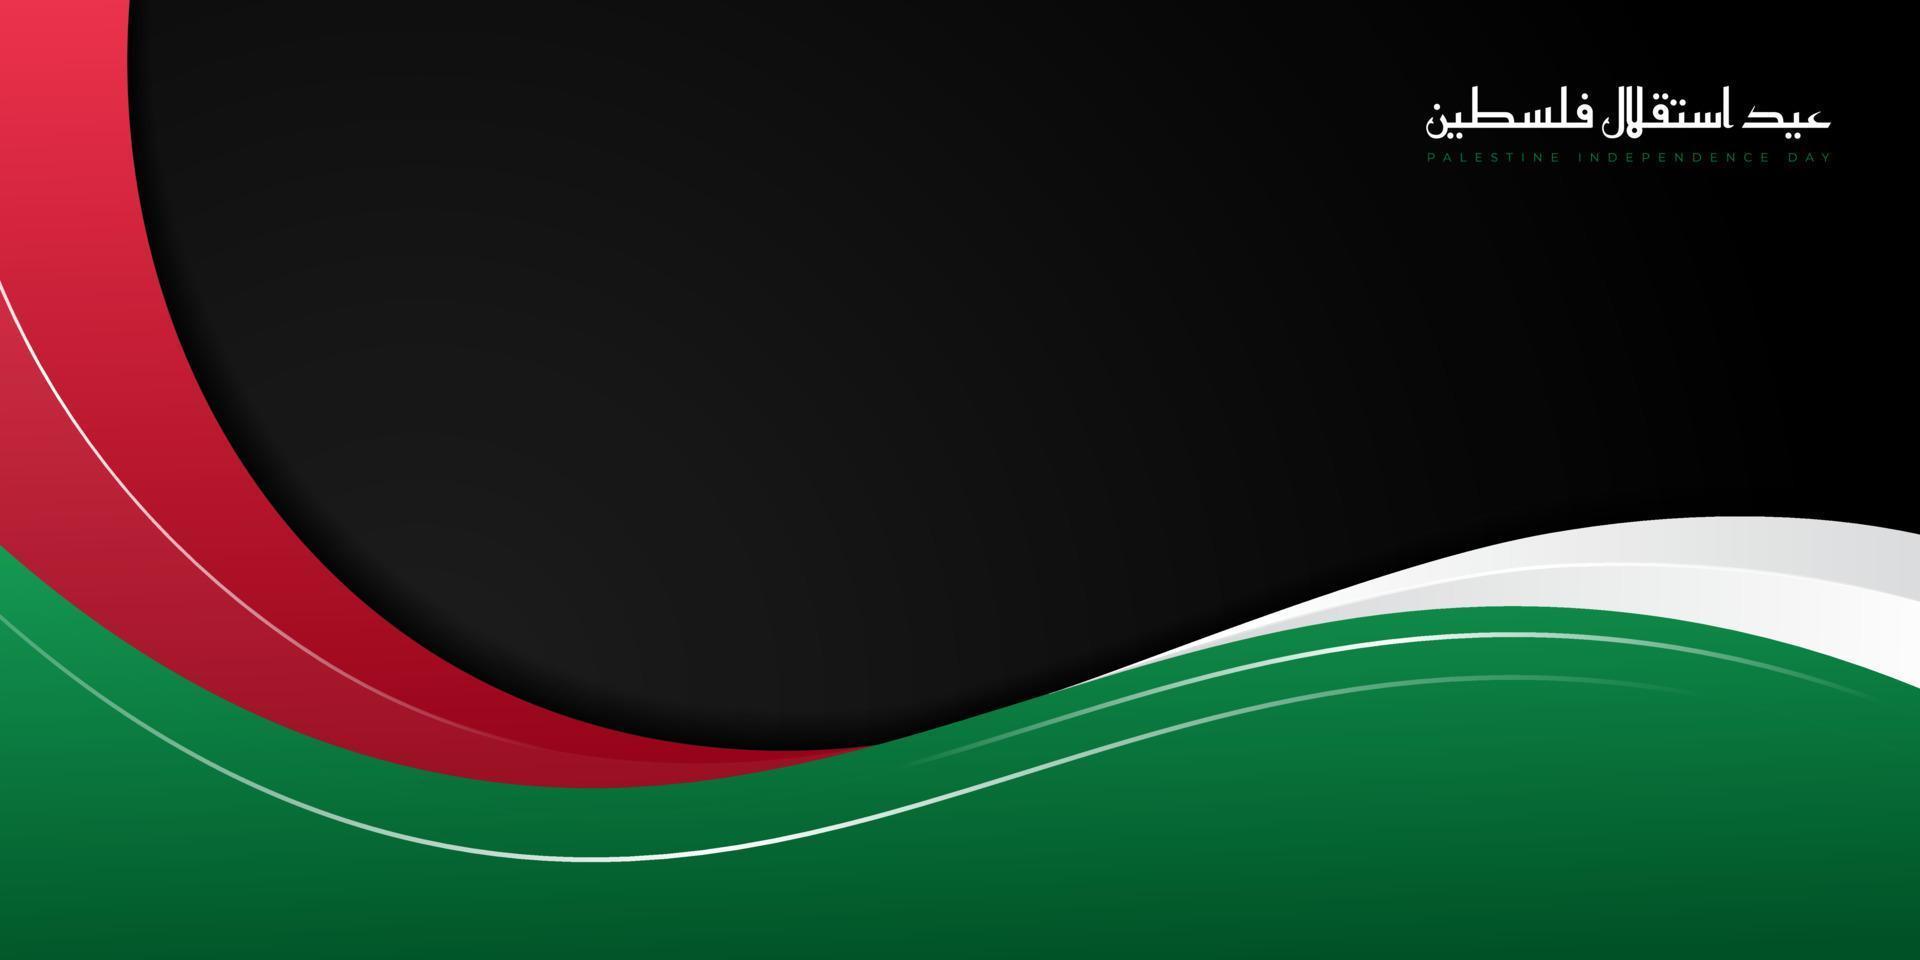 grünes, weißes und rotes abstraktes Design mit schwarzem Hintergrund. Arabischer Text bedeutet Unabhängigkeitstag Palästinas. vektor